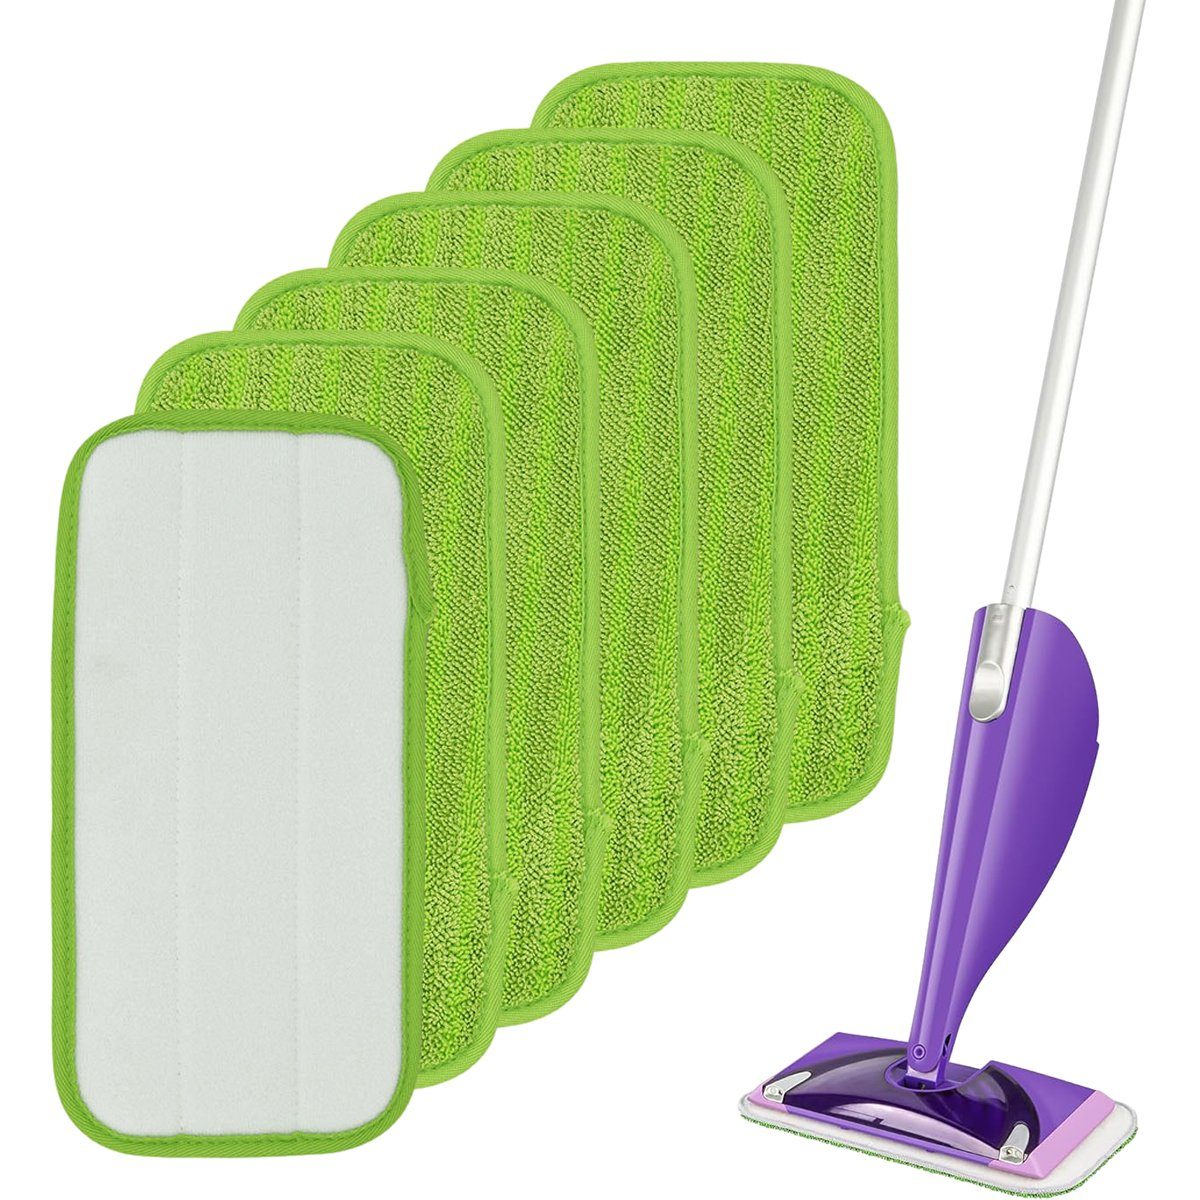 Jormftte Mop Pads,Mop Microfaser Flachmopp,Klettmopp Pads,für grün Wischbezug Reinigung